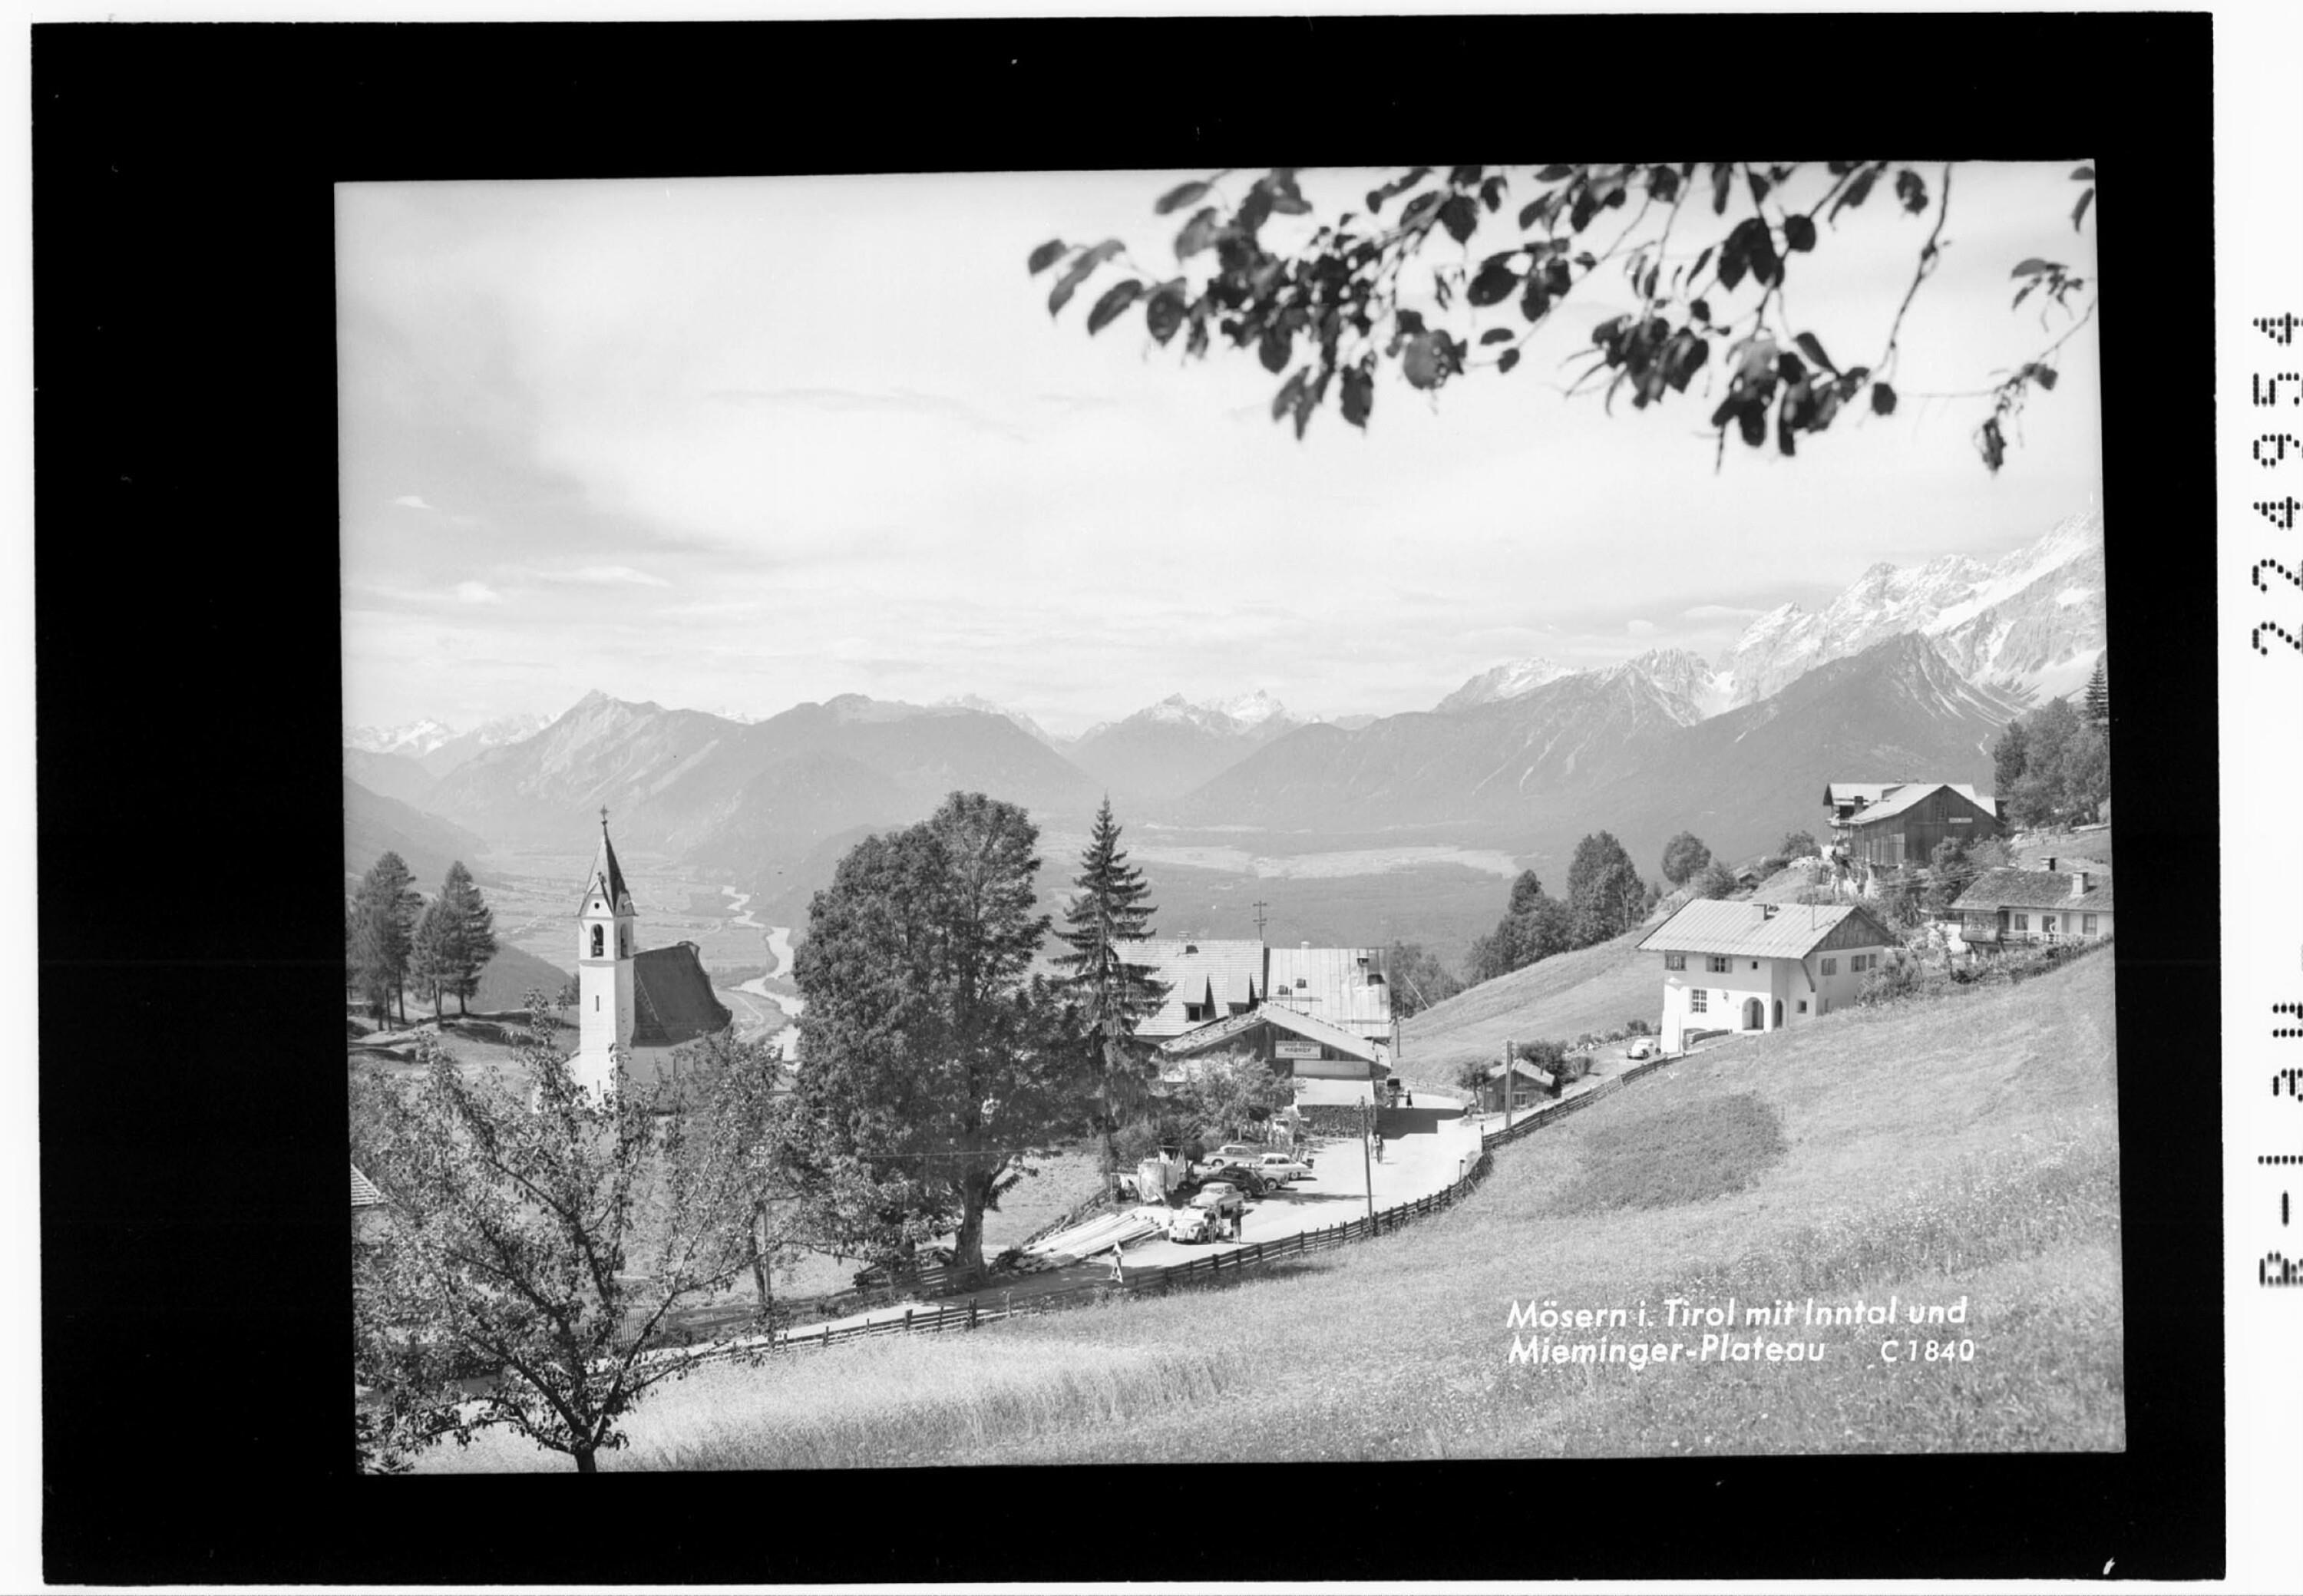 Mösern in Tirol mit Inntal und Mieminger Plateau></div>


    <hr>
    <div class=